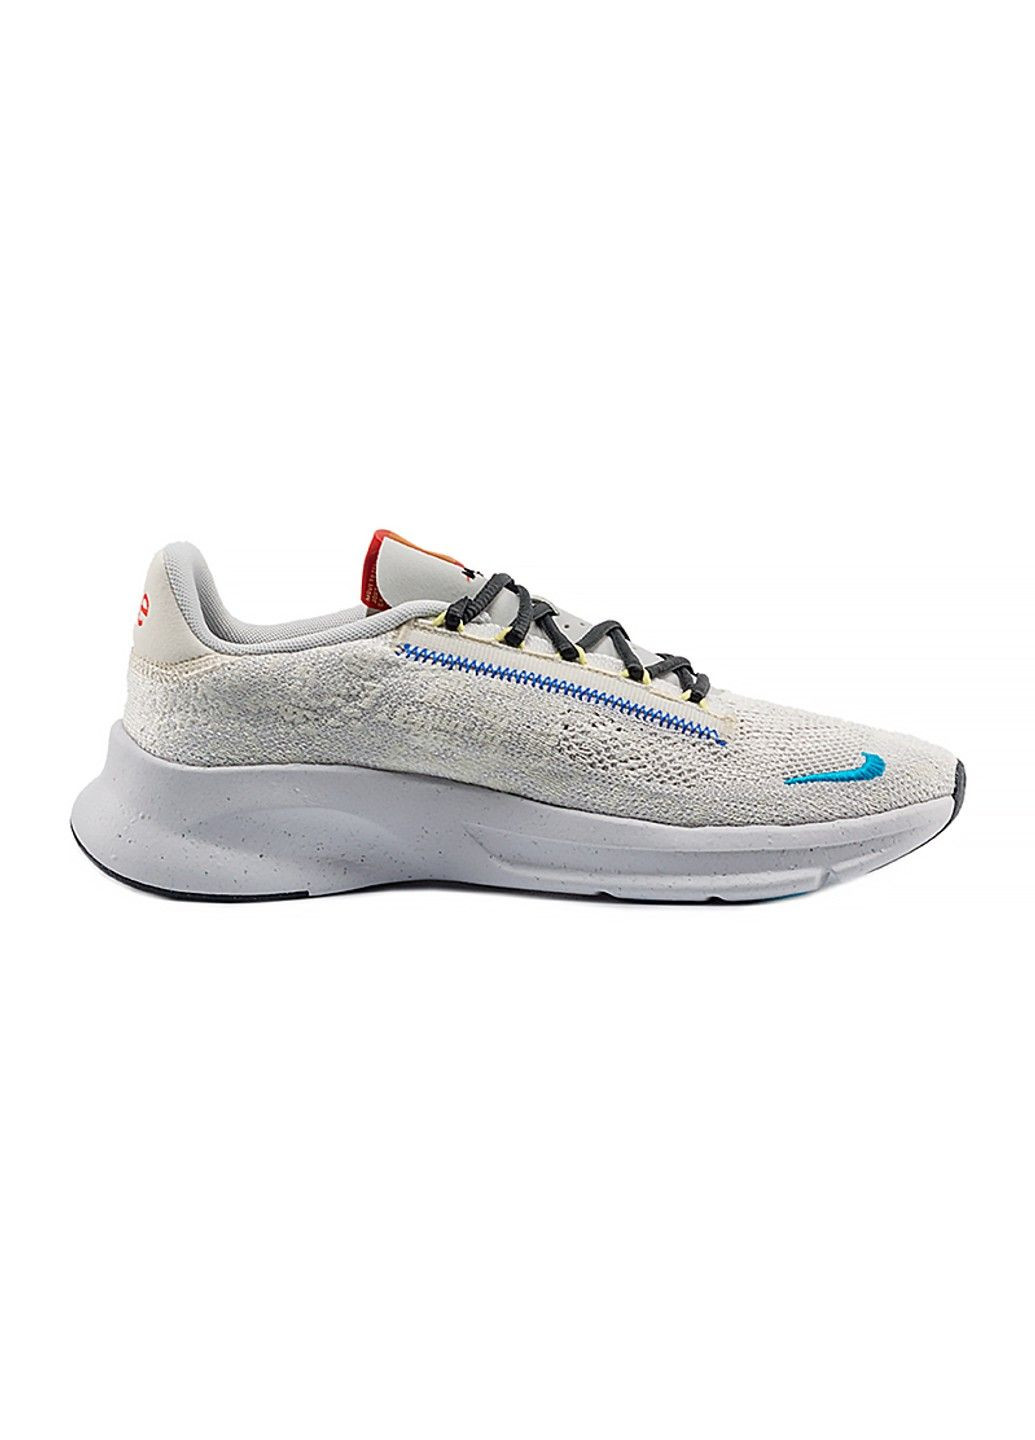 Цветные демисезонные кроссовки m superrep go 3 nn fk Nike